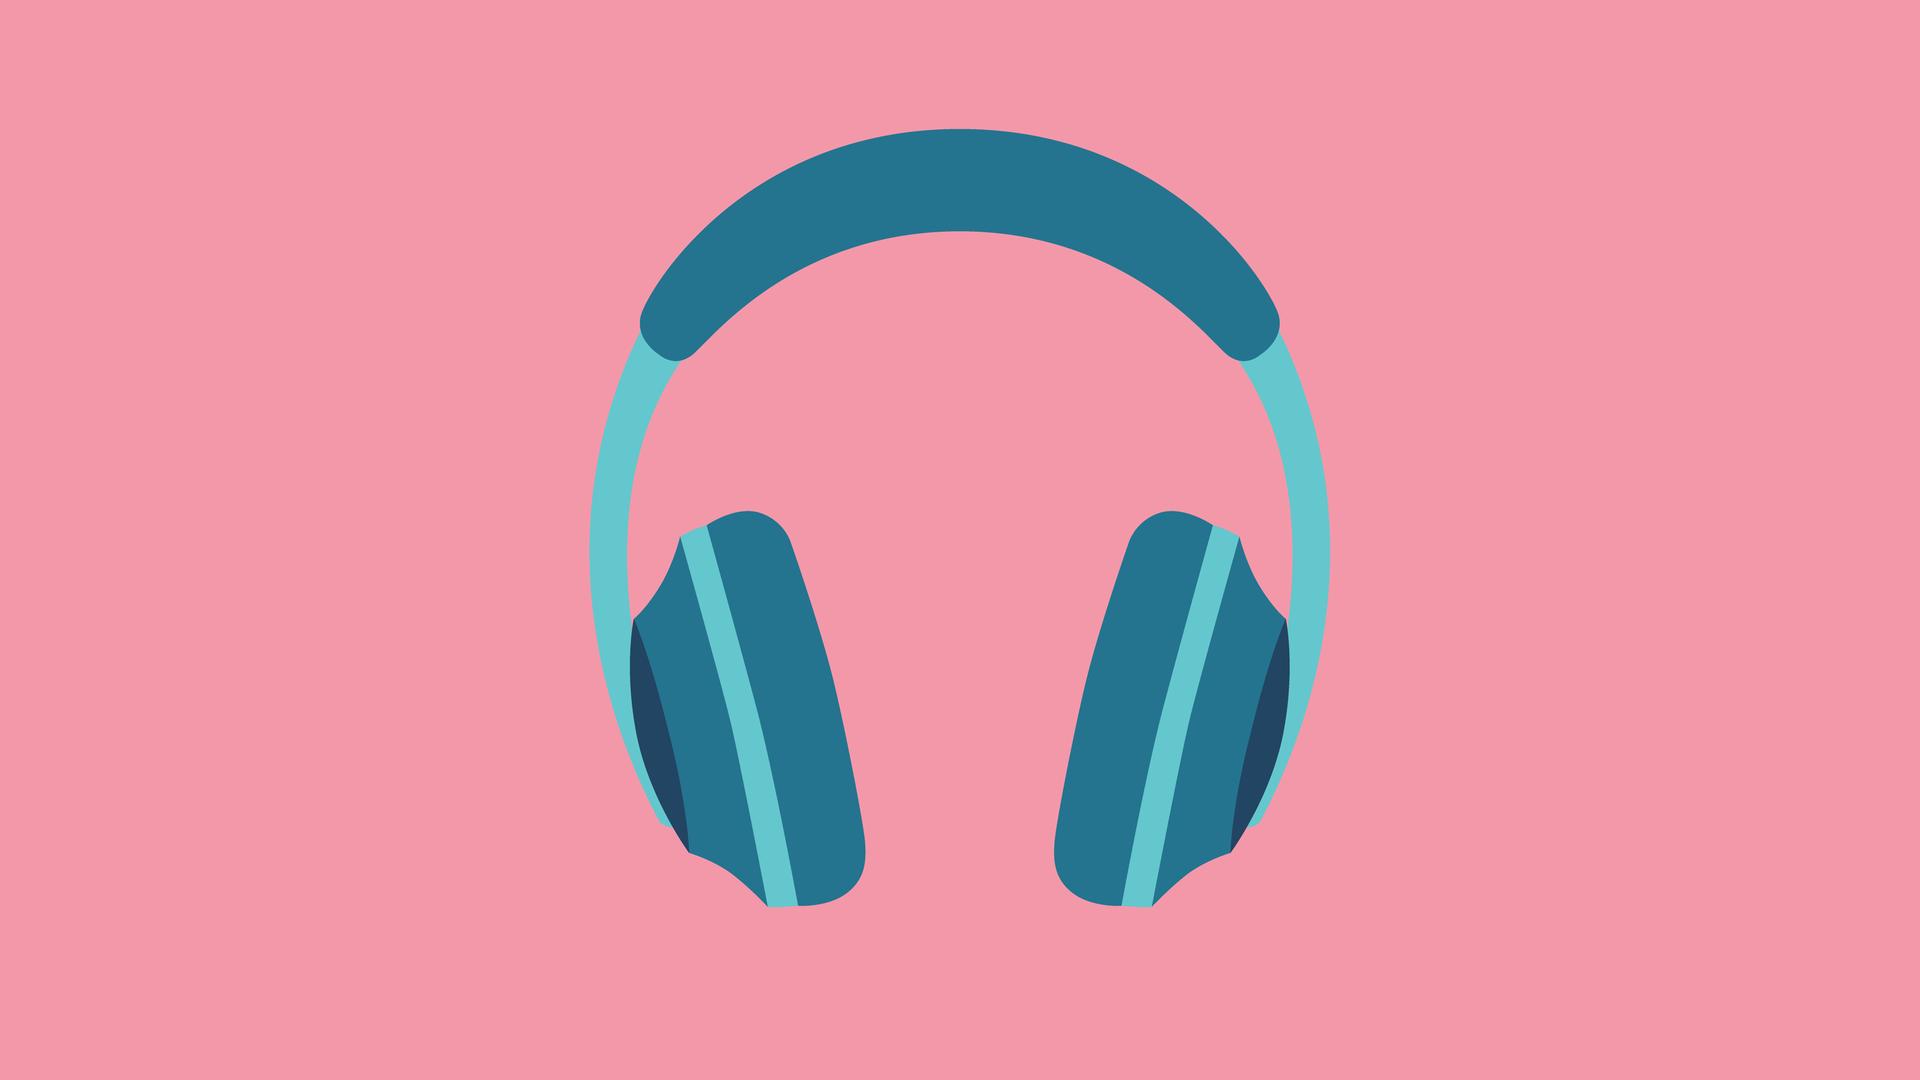 Illustration eines blaugrünen Kopfhörers auf rosafarbenem Hintergrund.